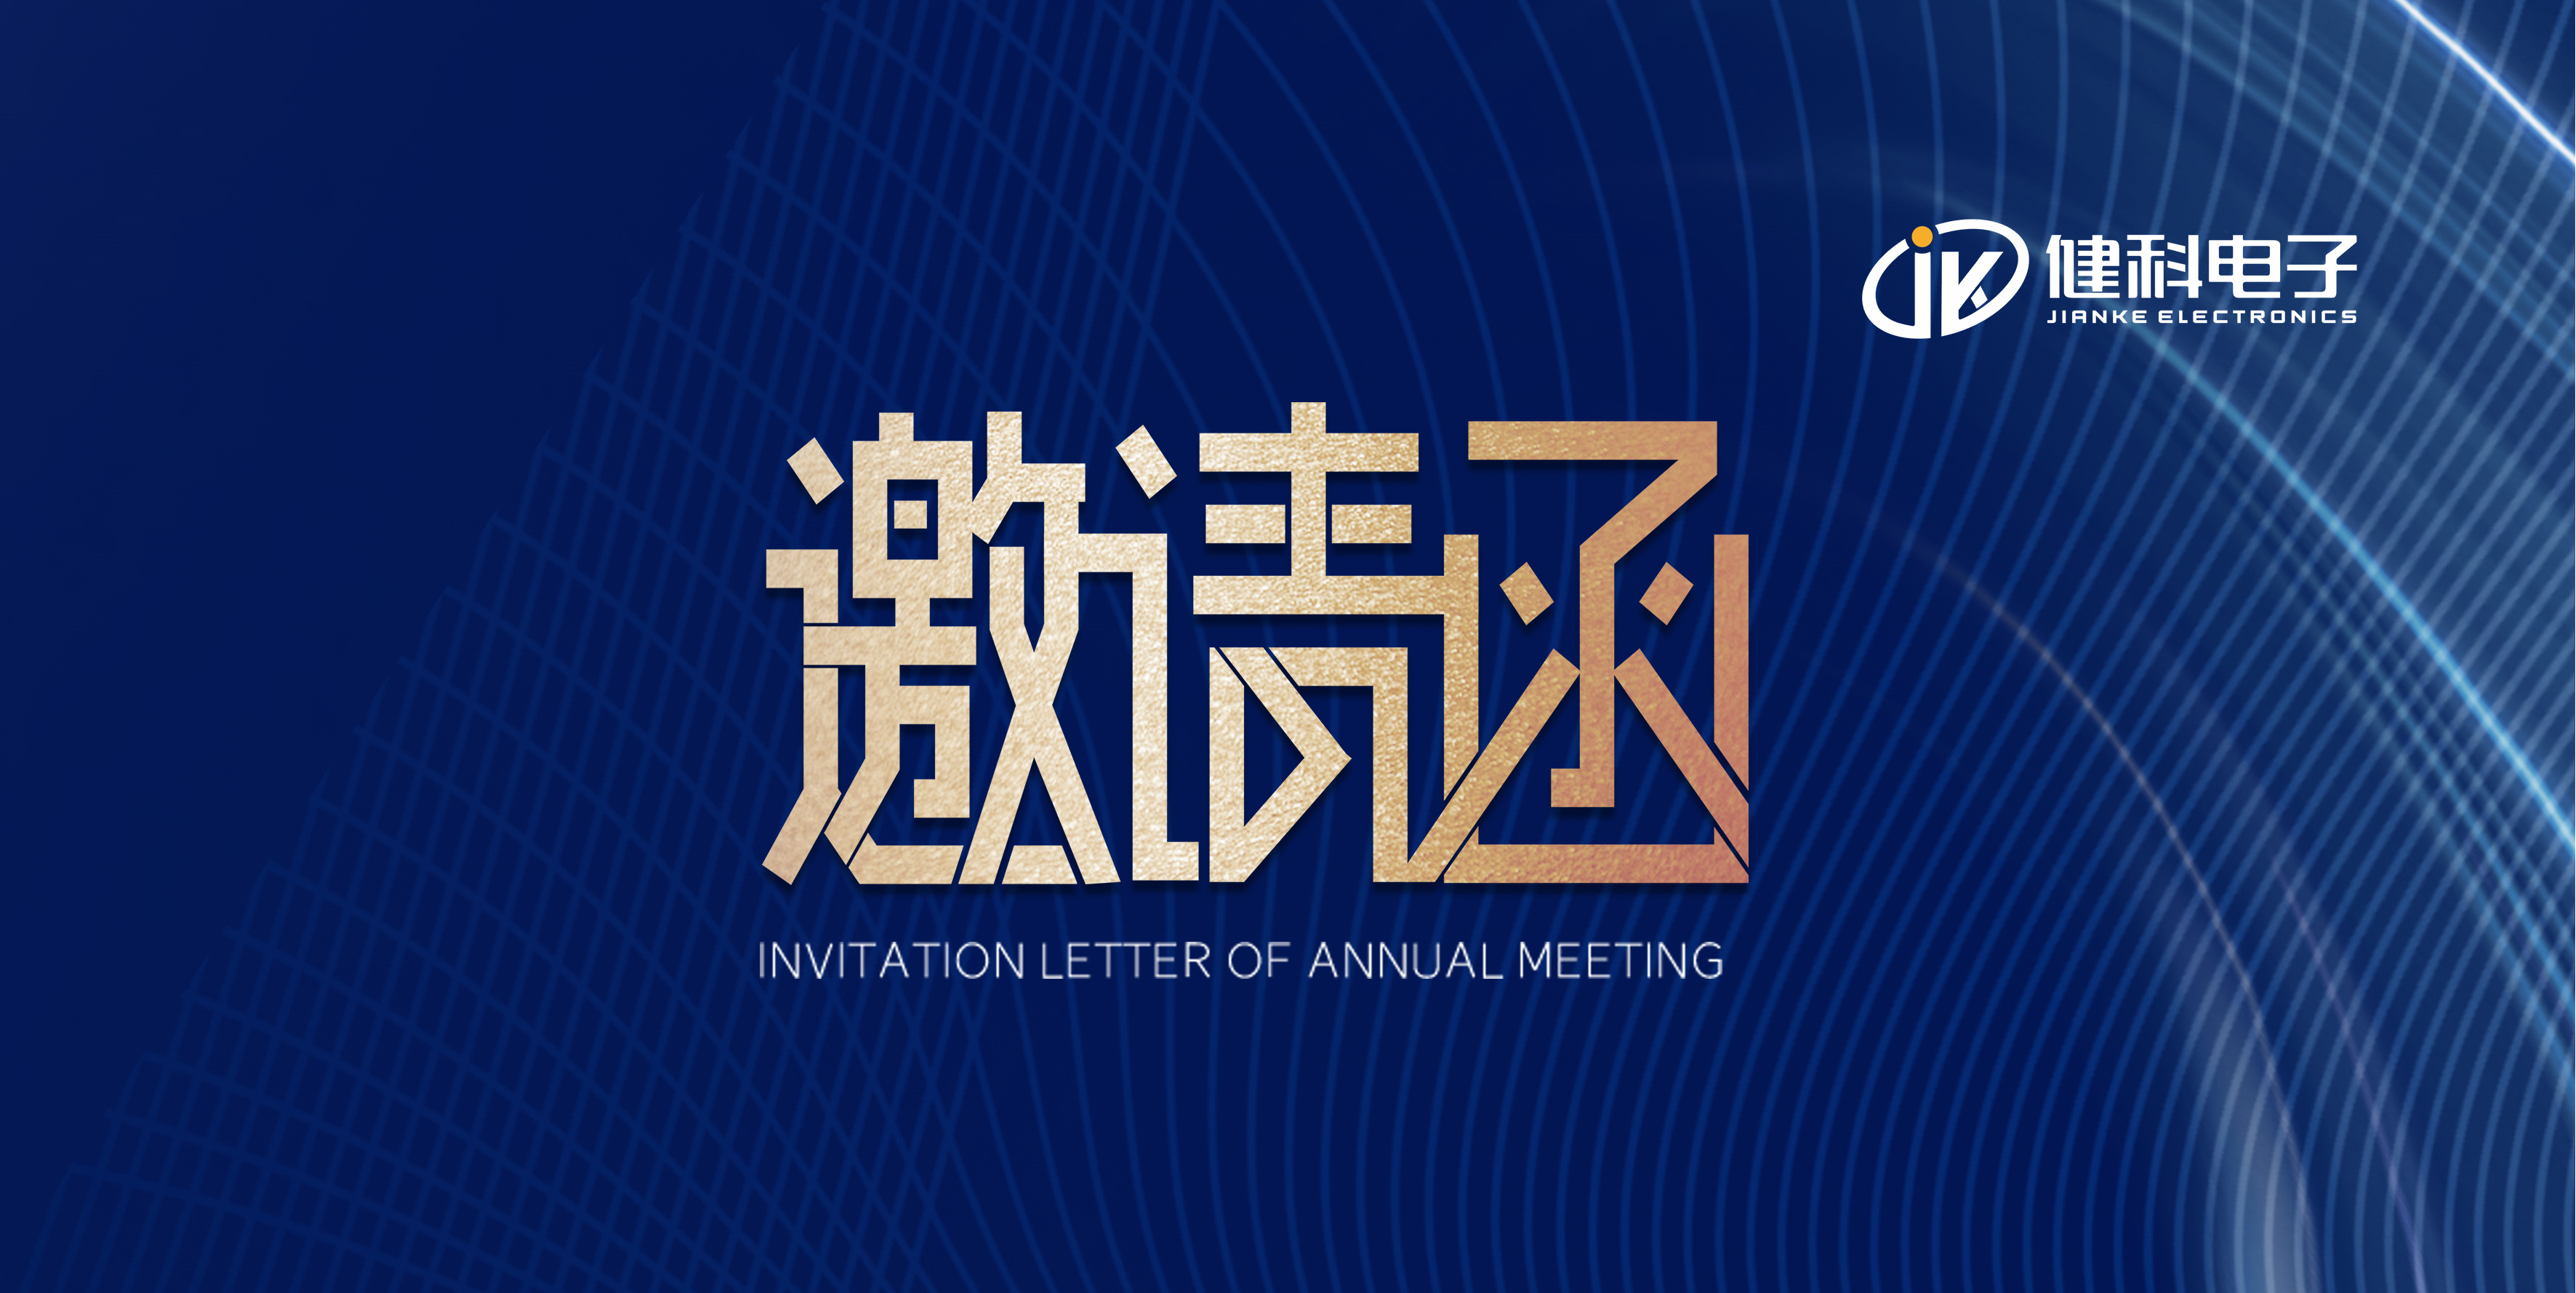 展会邀请 I 健科电子与您相约第21届上海国际车用空调及冷藏技术展览会